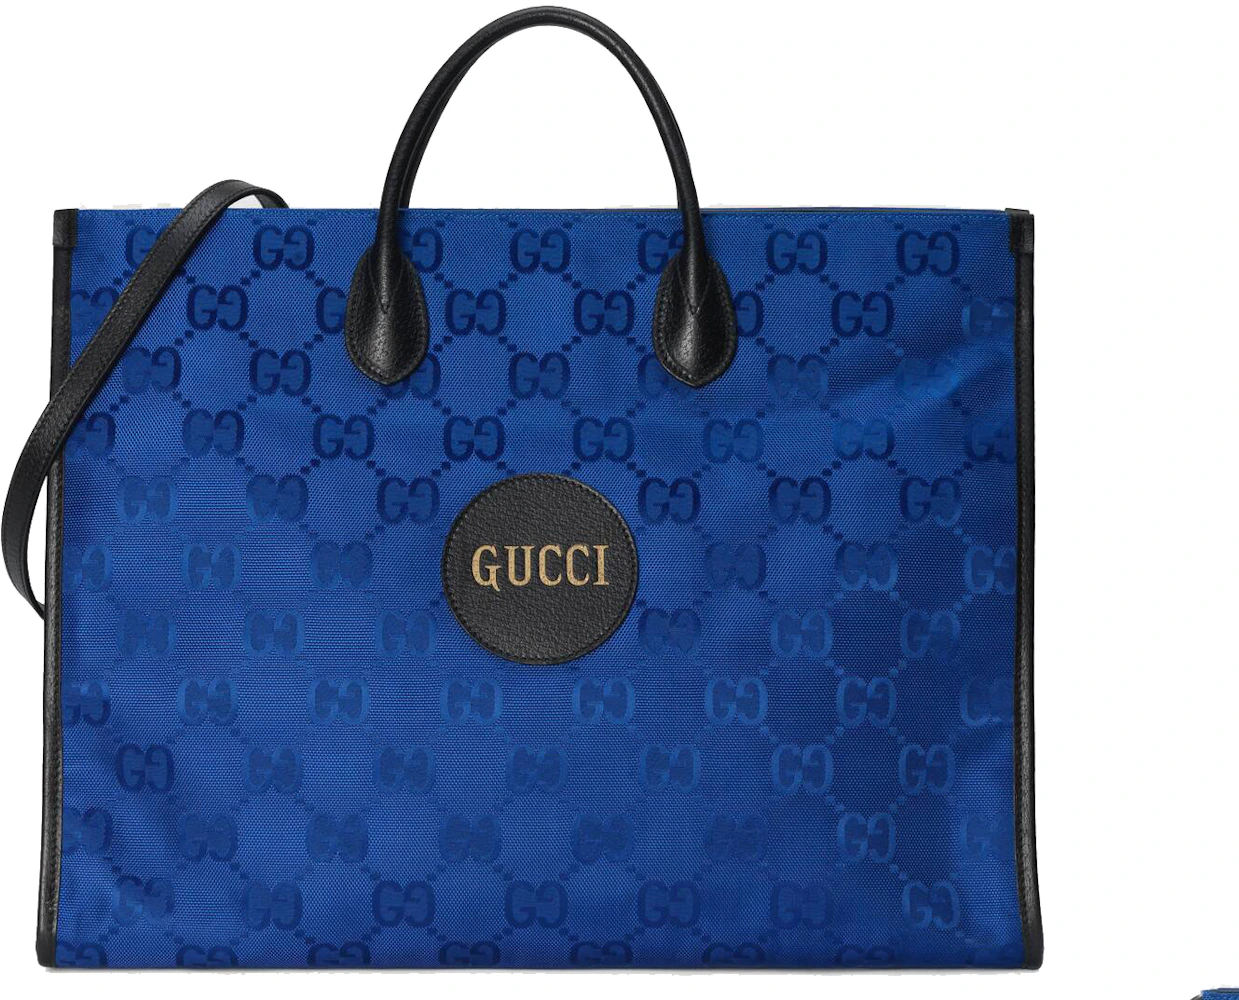 Gucci Women's Tote Bag